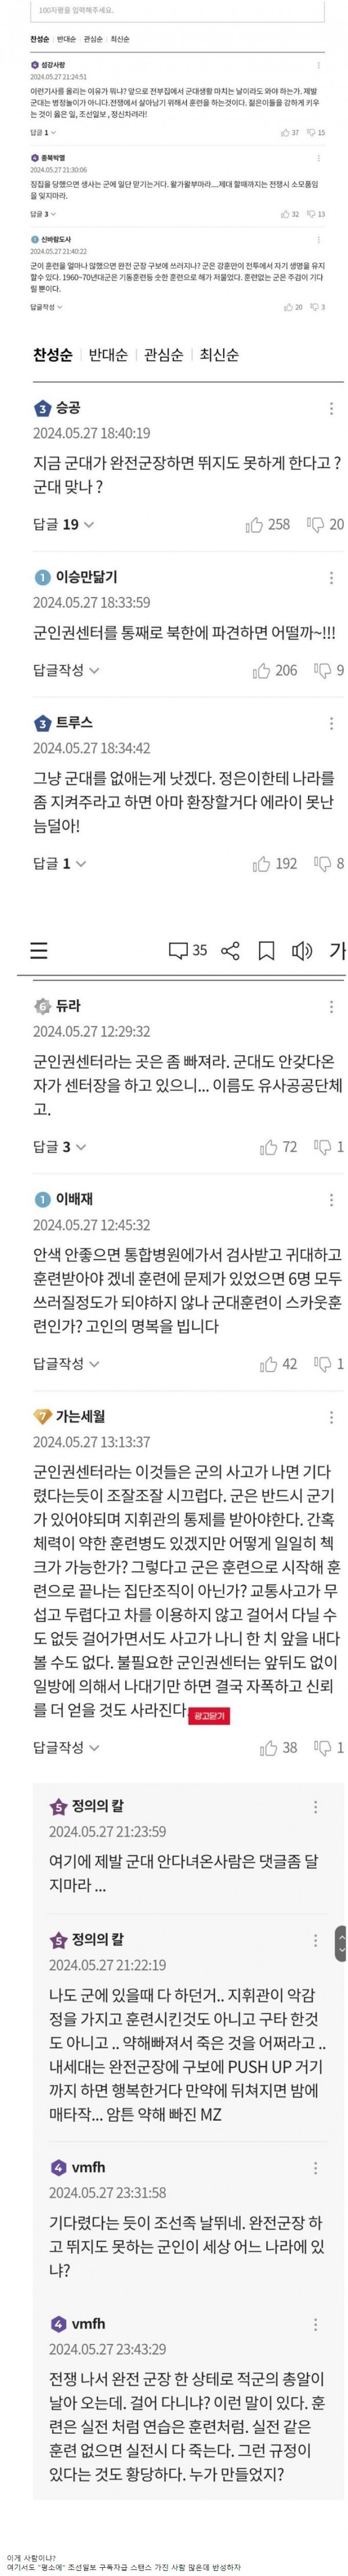 이와중에 조선일보 댓글 근황..